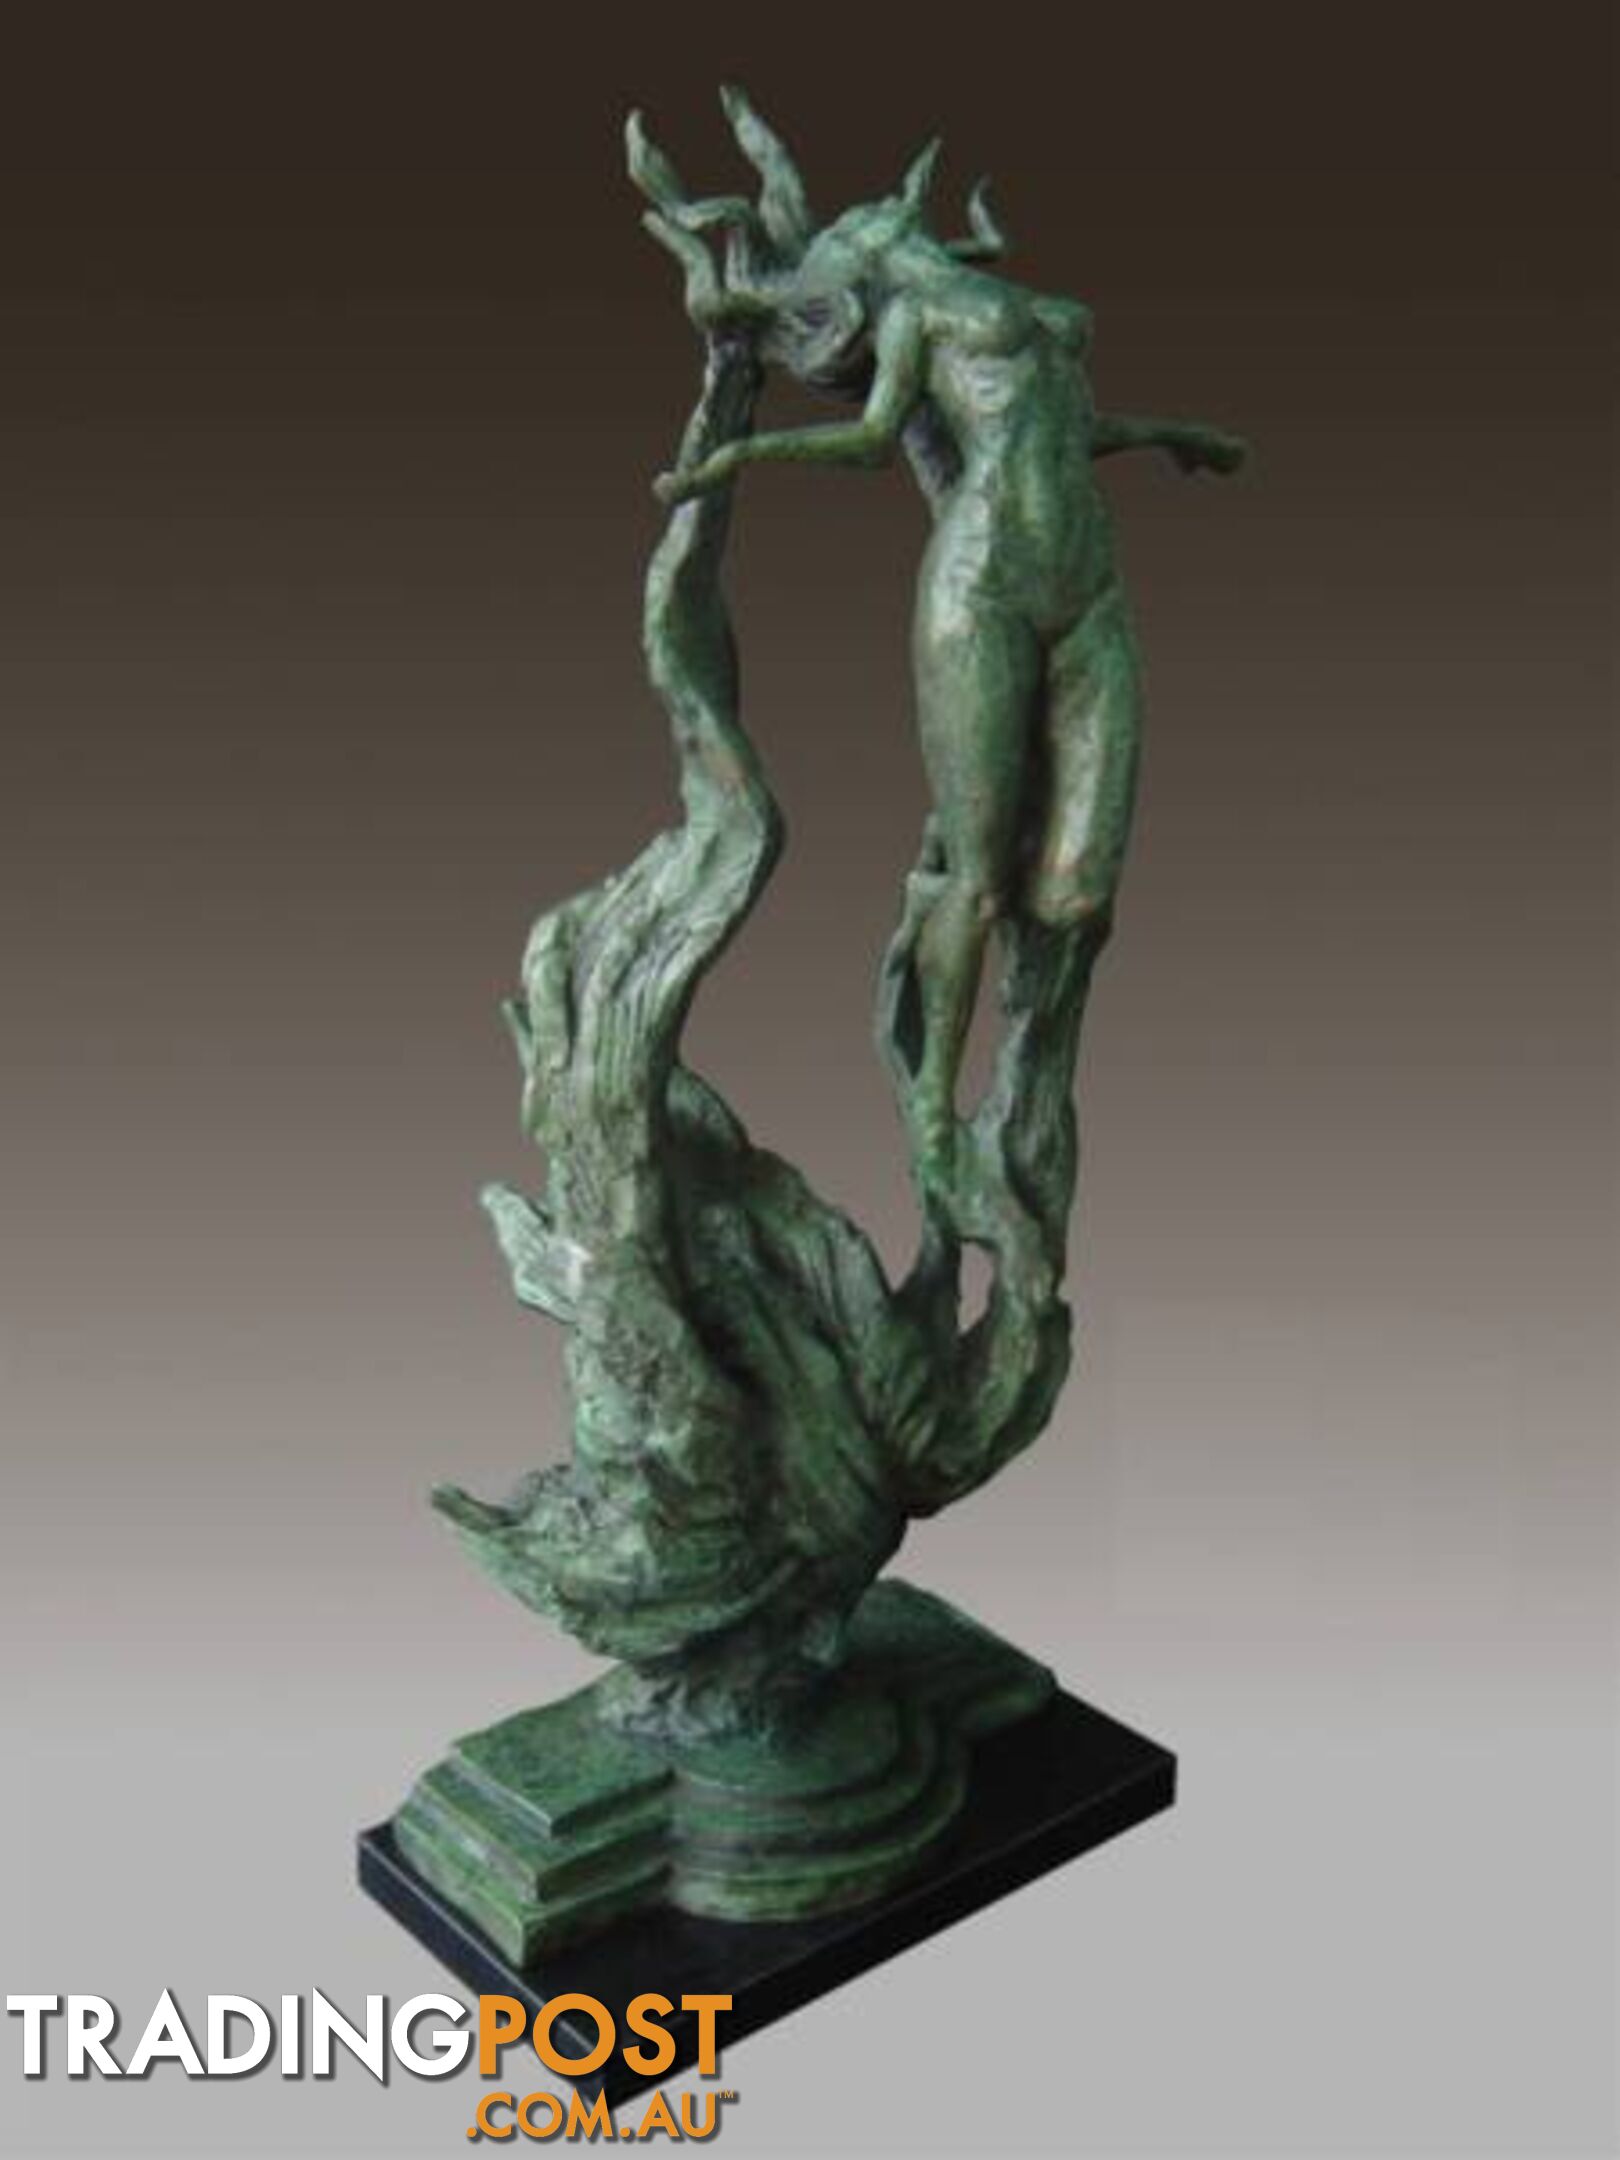 Nude Women Figurative Bronze Sculpture